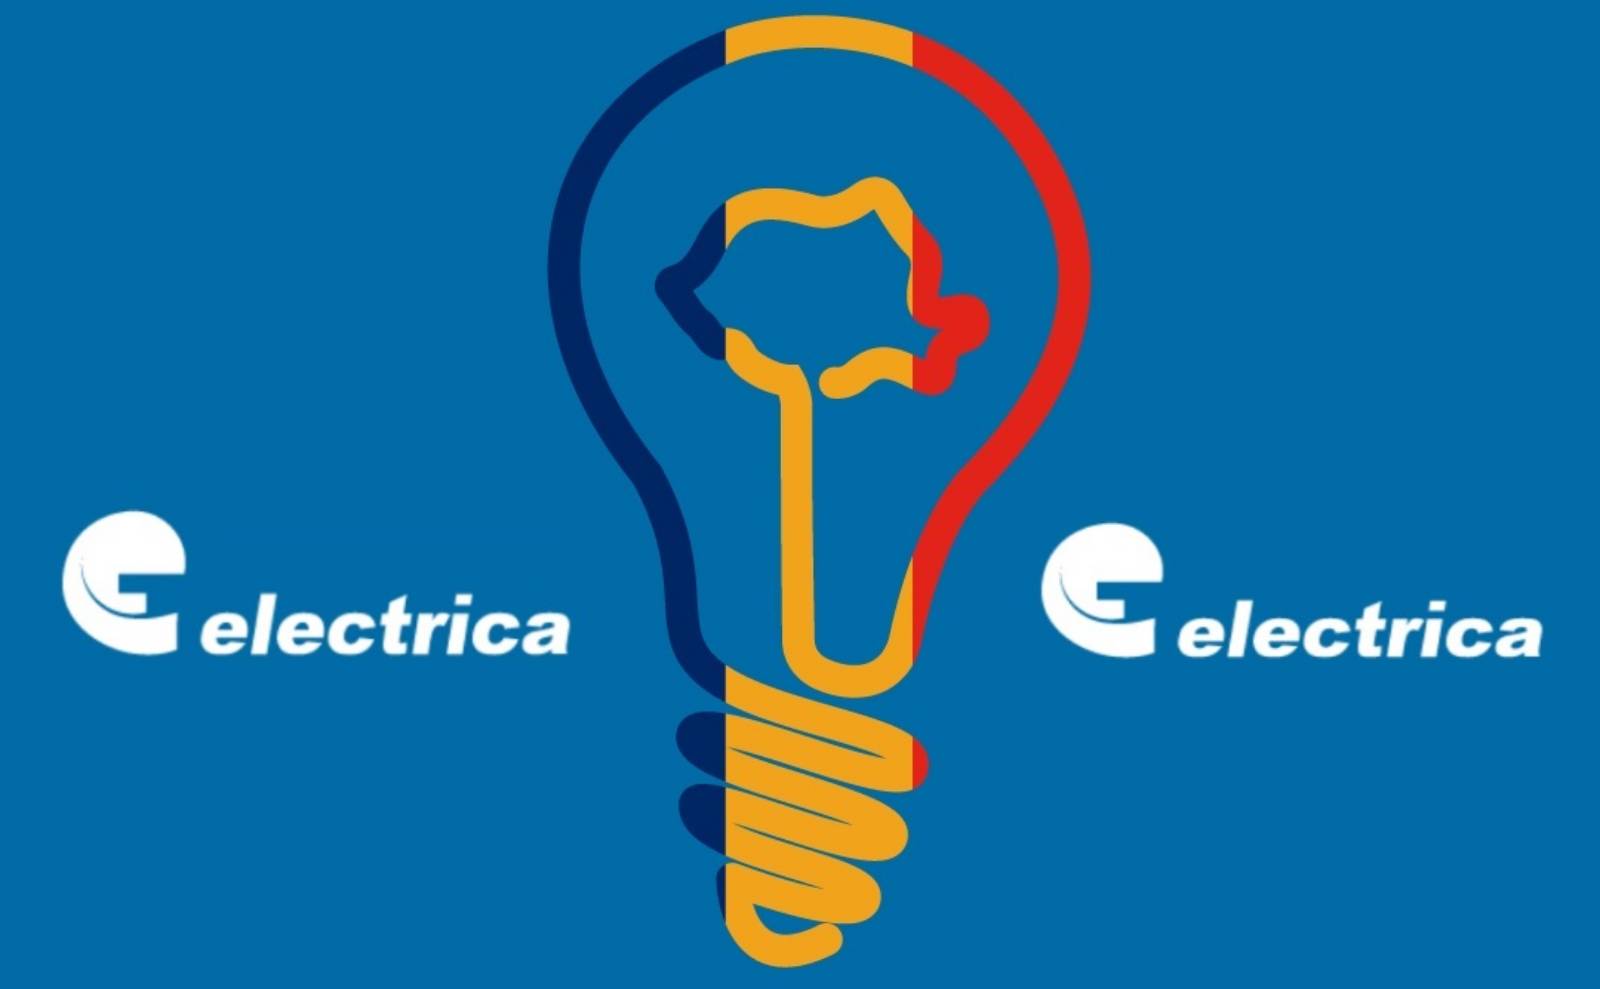 Electrica Officiell kommunikation SISTA MINUTEN Åtgärder Kunder Rumänien